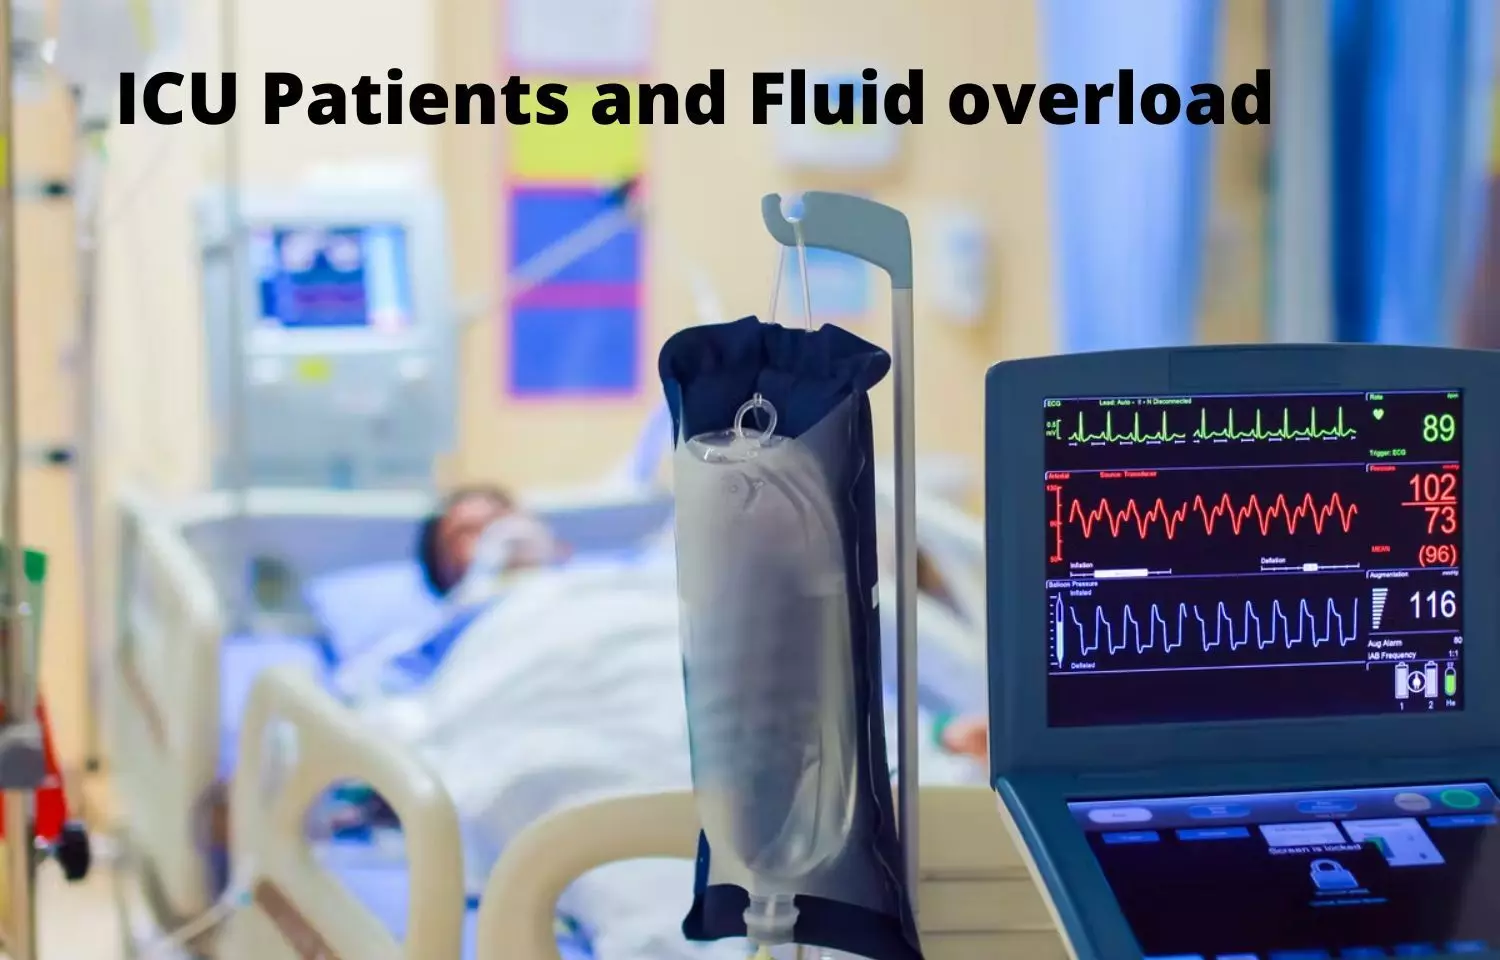 Do loop diuretics reduce mortality in ICU patients with fluid overload?